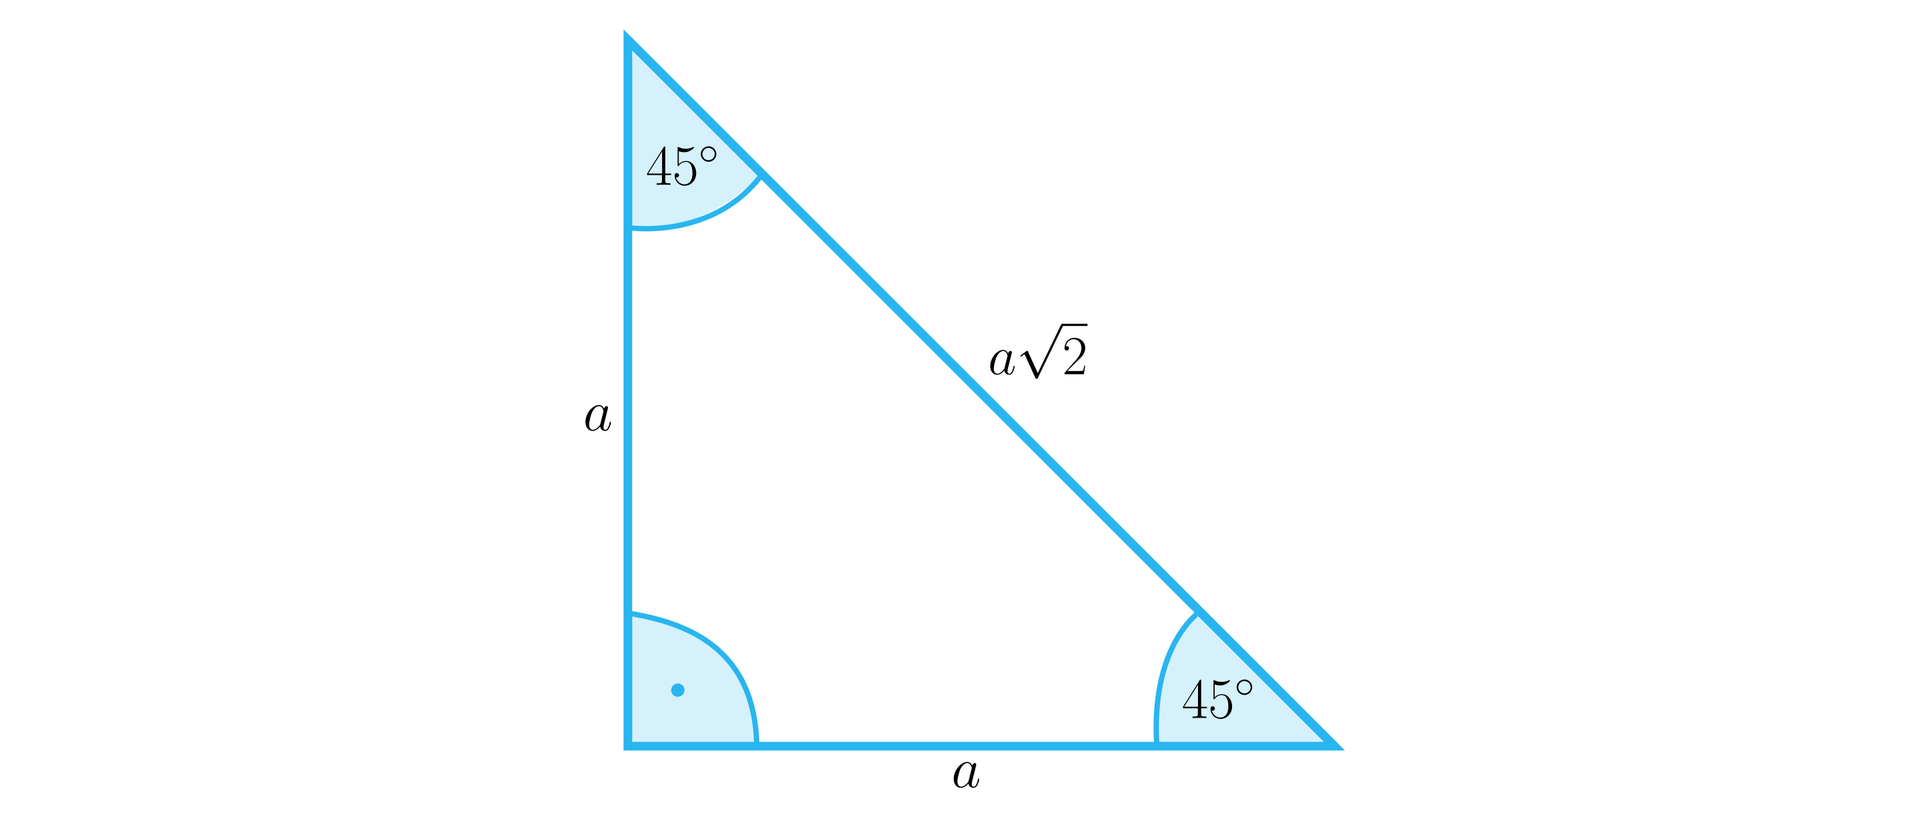 Ilustracja przedstawia równoramienny trójkąt prostokątny o przyprostokątnych a i przeciwprostokątnej a2. W trójkącie zaznaczono trzy kąty wewnętrzne: kąt prosty między przyprostokątnymi oraz dwa kąty o mierze czterdziestu pięciu stopni między przeciwprostokątną a każdą z przyprostokątnych.